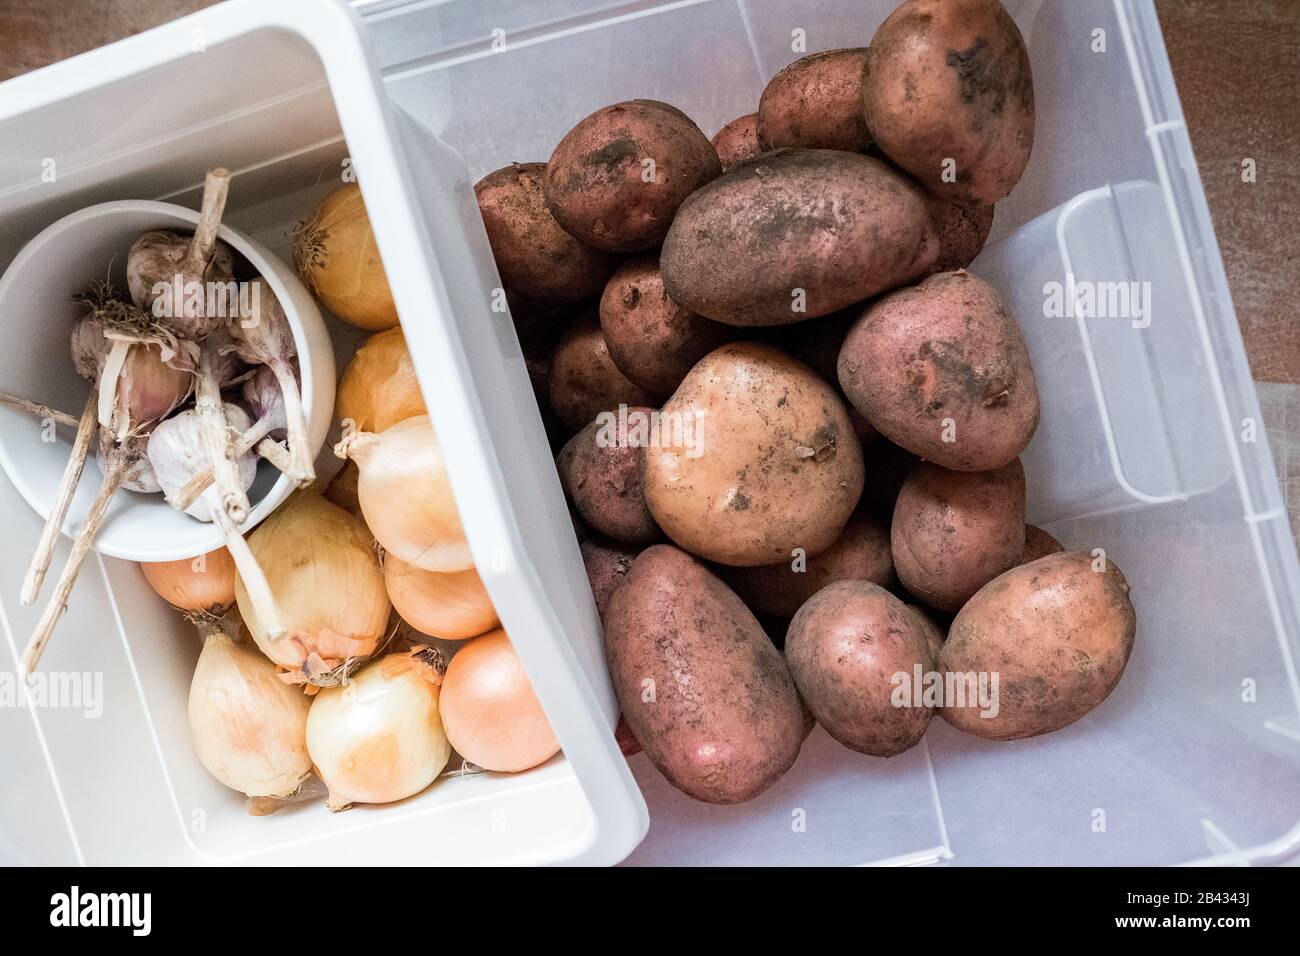 Patate, cipolle, aglio in contenitori in cucina. Mantenere verdure pulite nella casa Foto Stock